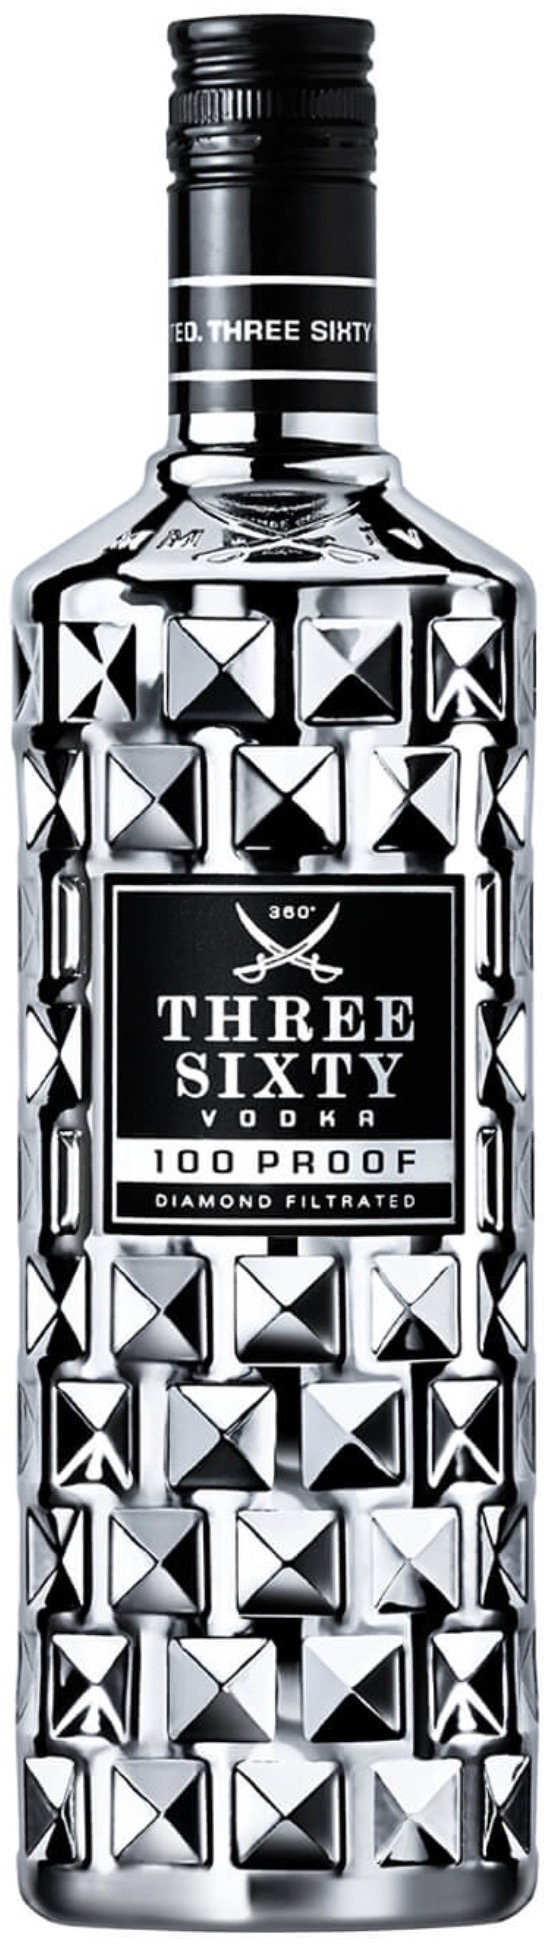 Three Sixty 100 Proof Vodka 50% vol. 0,7L